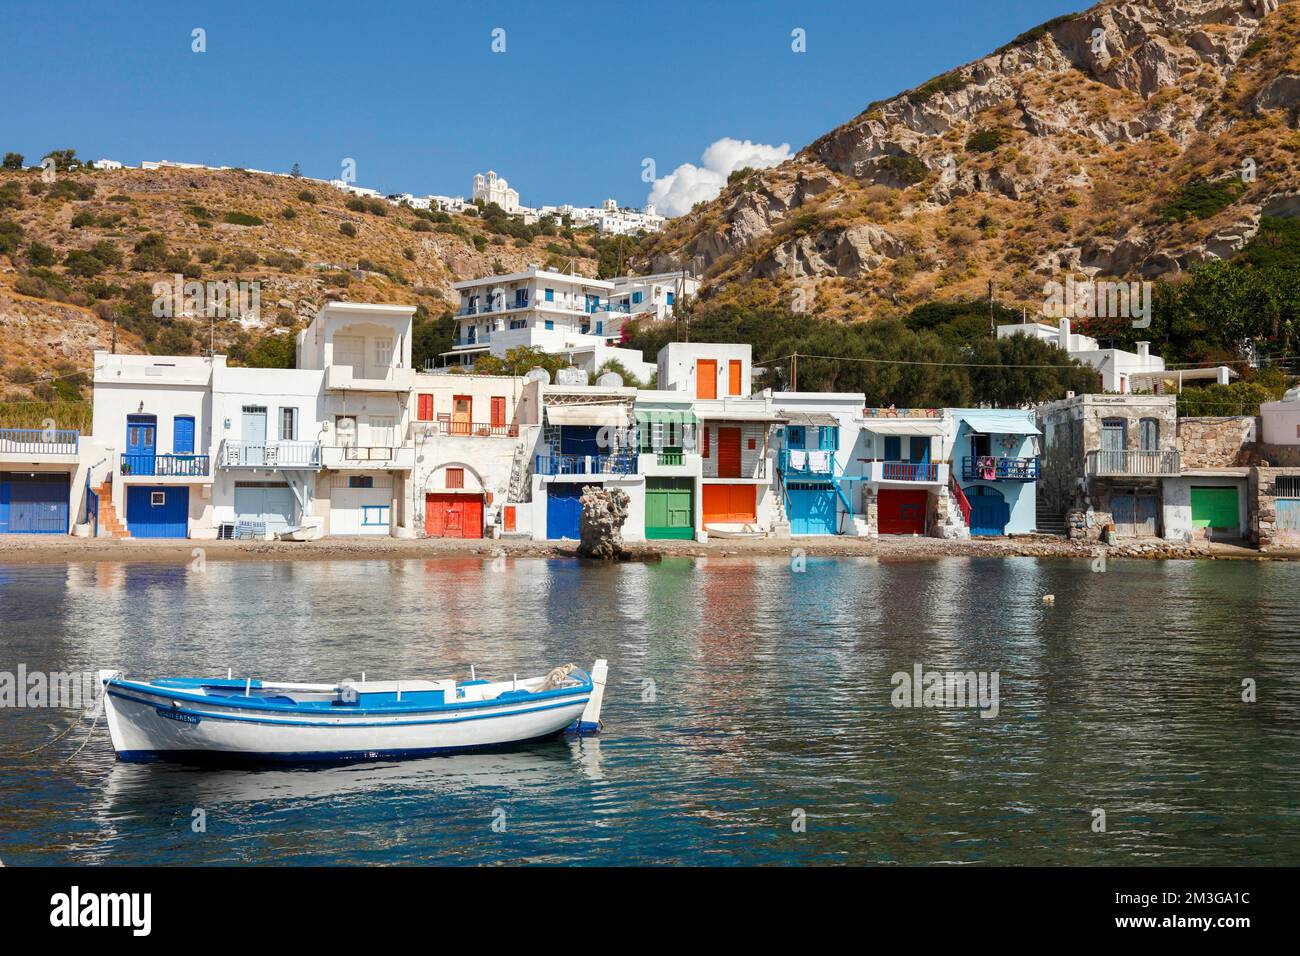 Le pittoresque village de pêcheurs avec les serres colorées de Syrmata dans le petit village de Mandraki sur l'île de Milos, Cyclades, Grèce Banque D'Images